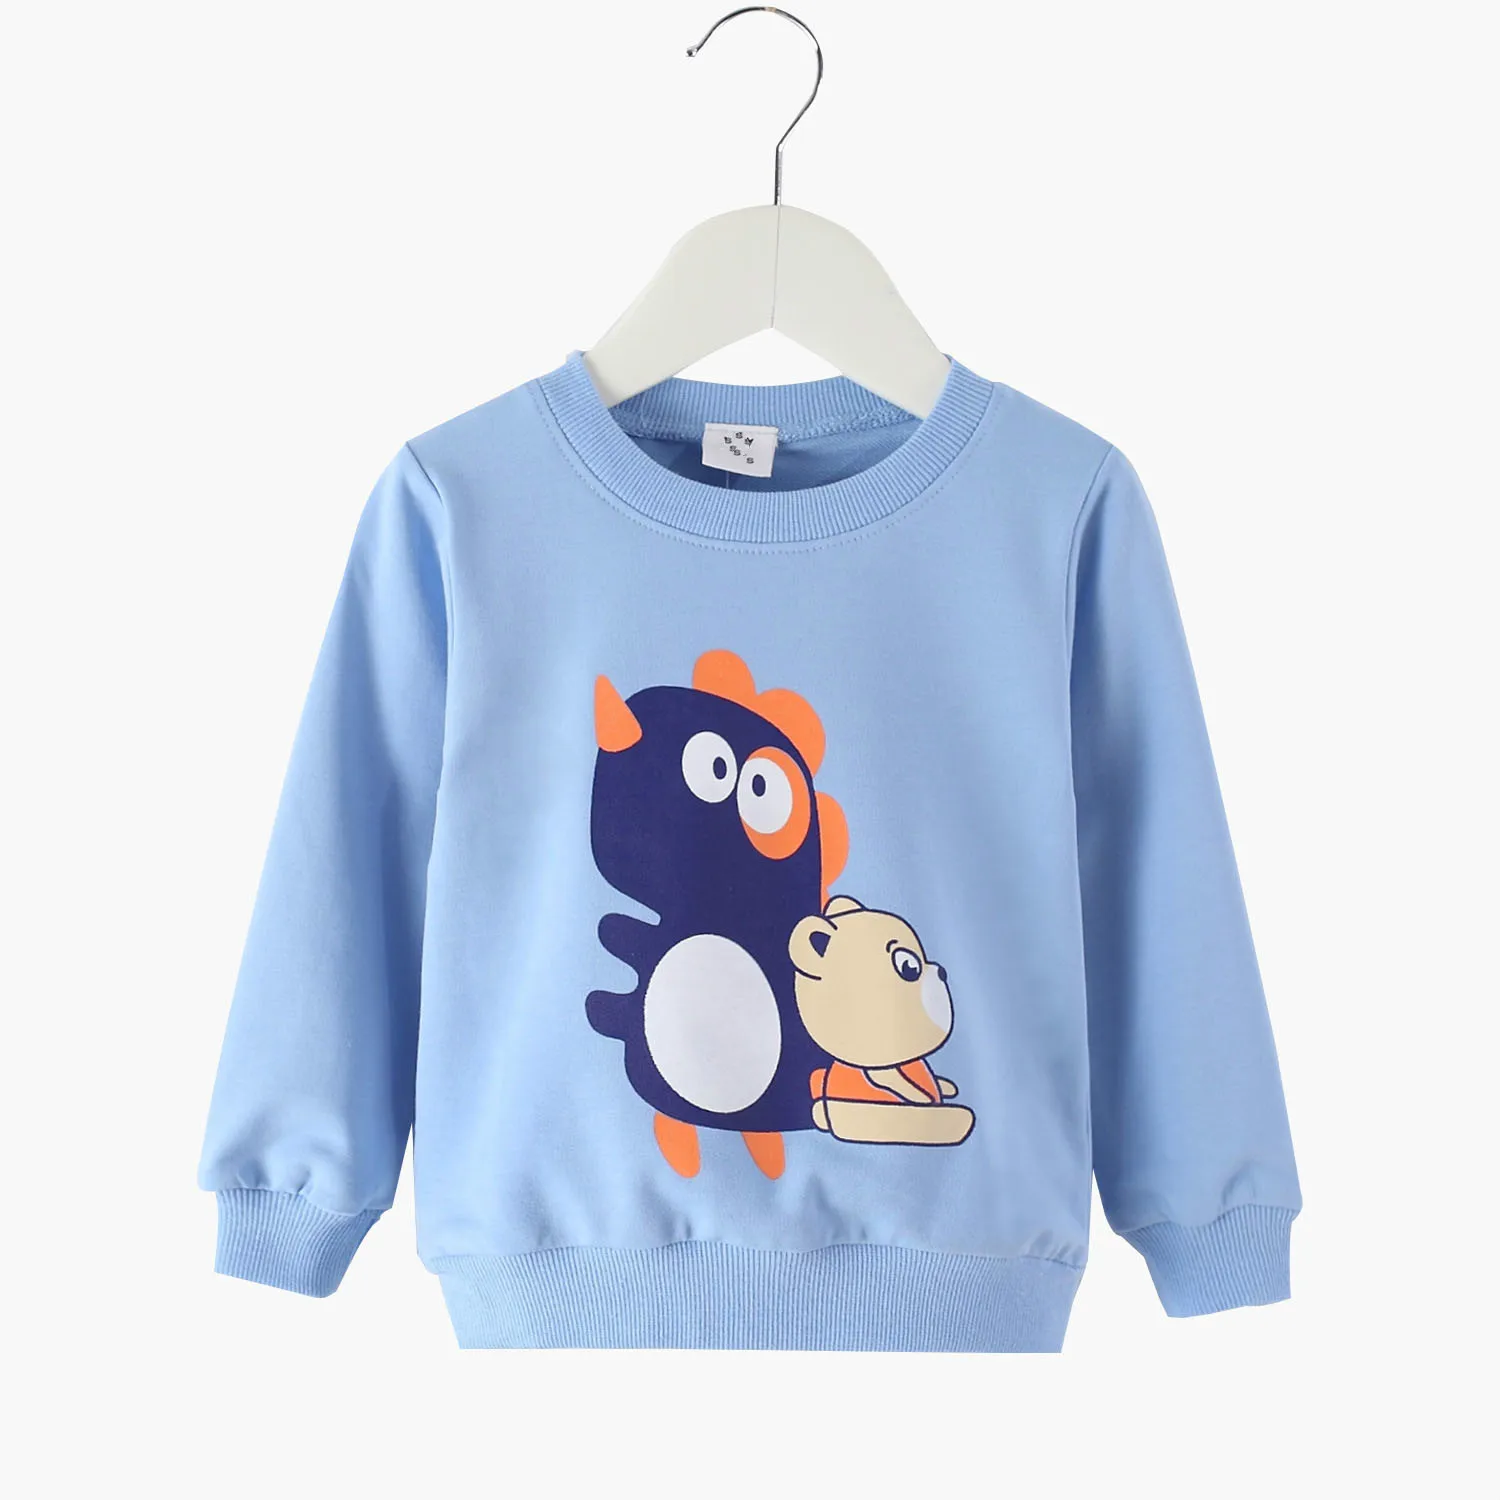 [Unini-yun]/ г., Новое поступление, весенний махровый свитер для маленьких девочек и мальчиков футболка с длинными рукавами и героями мультфильмов трикотажная одежда для маленьких детей - Цвет: Оранжевый